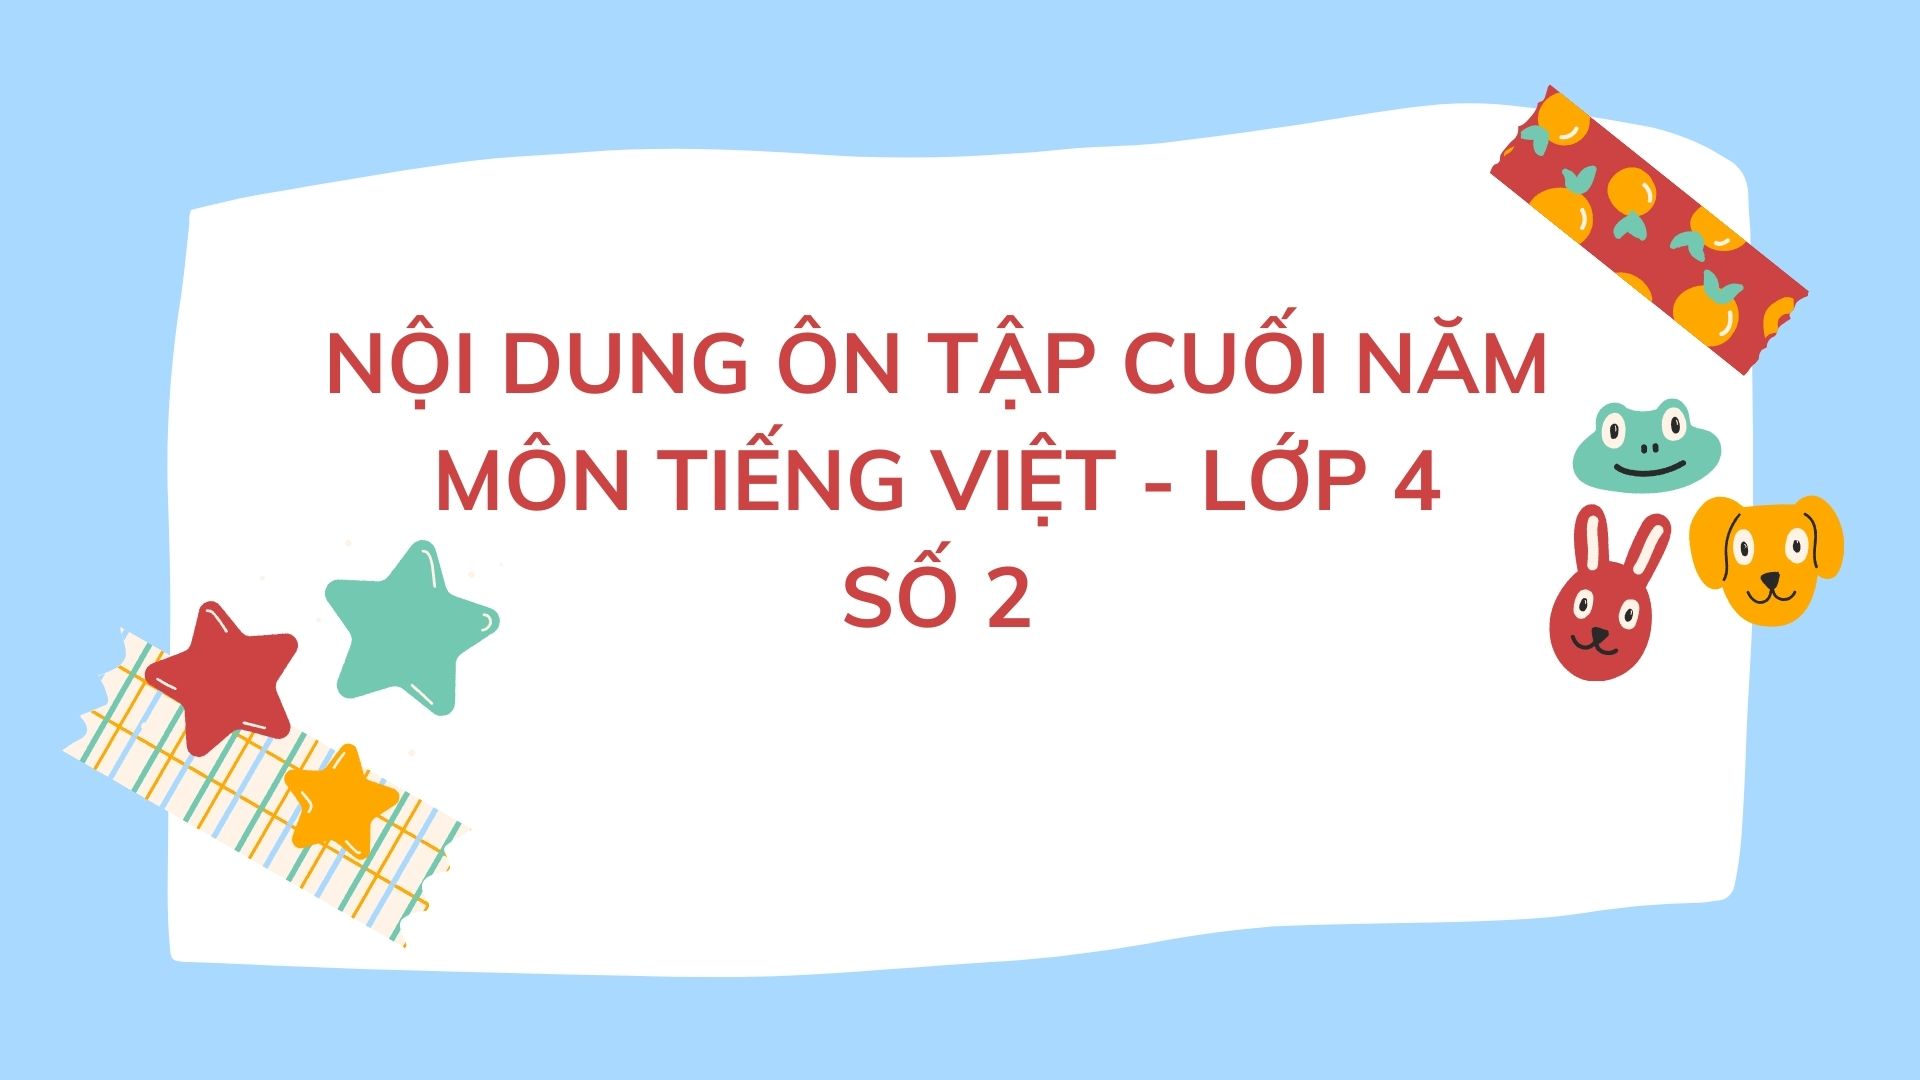 Nội dung ôn tập cuối năm môn Tiếng Việt Lớp 4 - Số 2